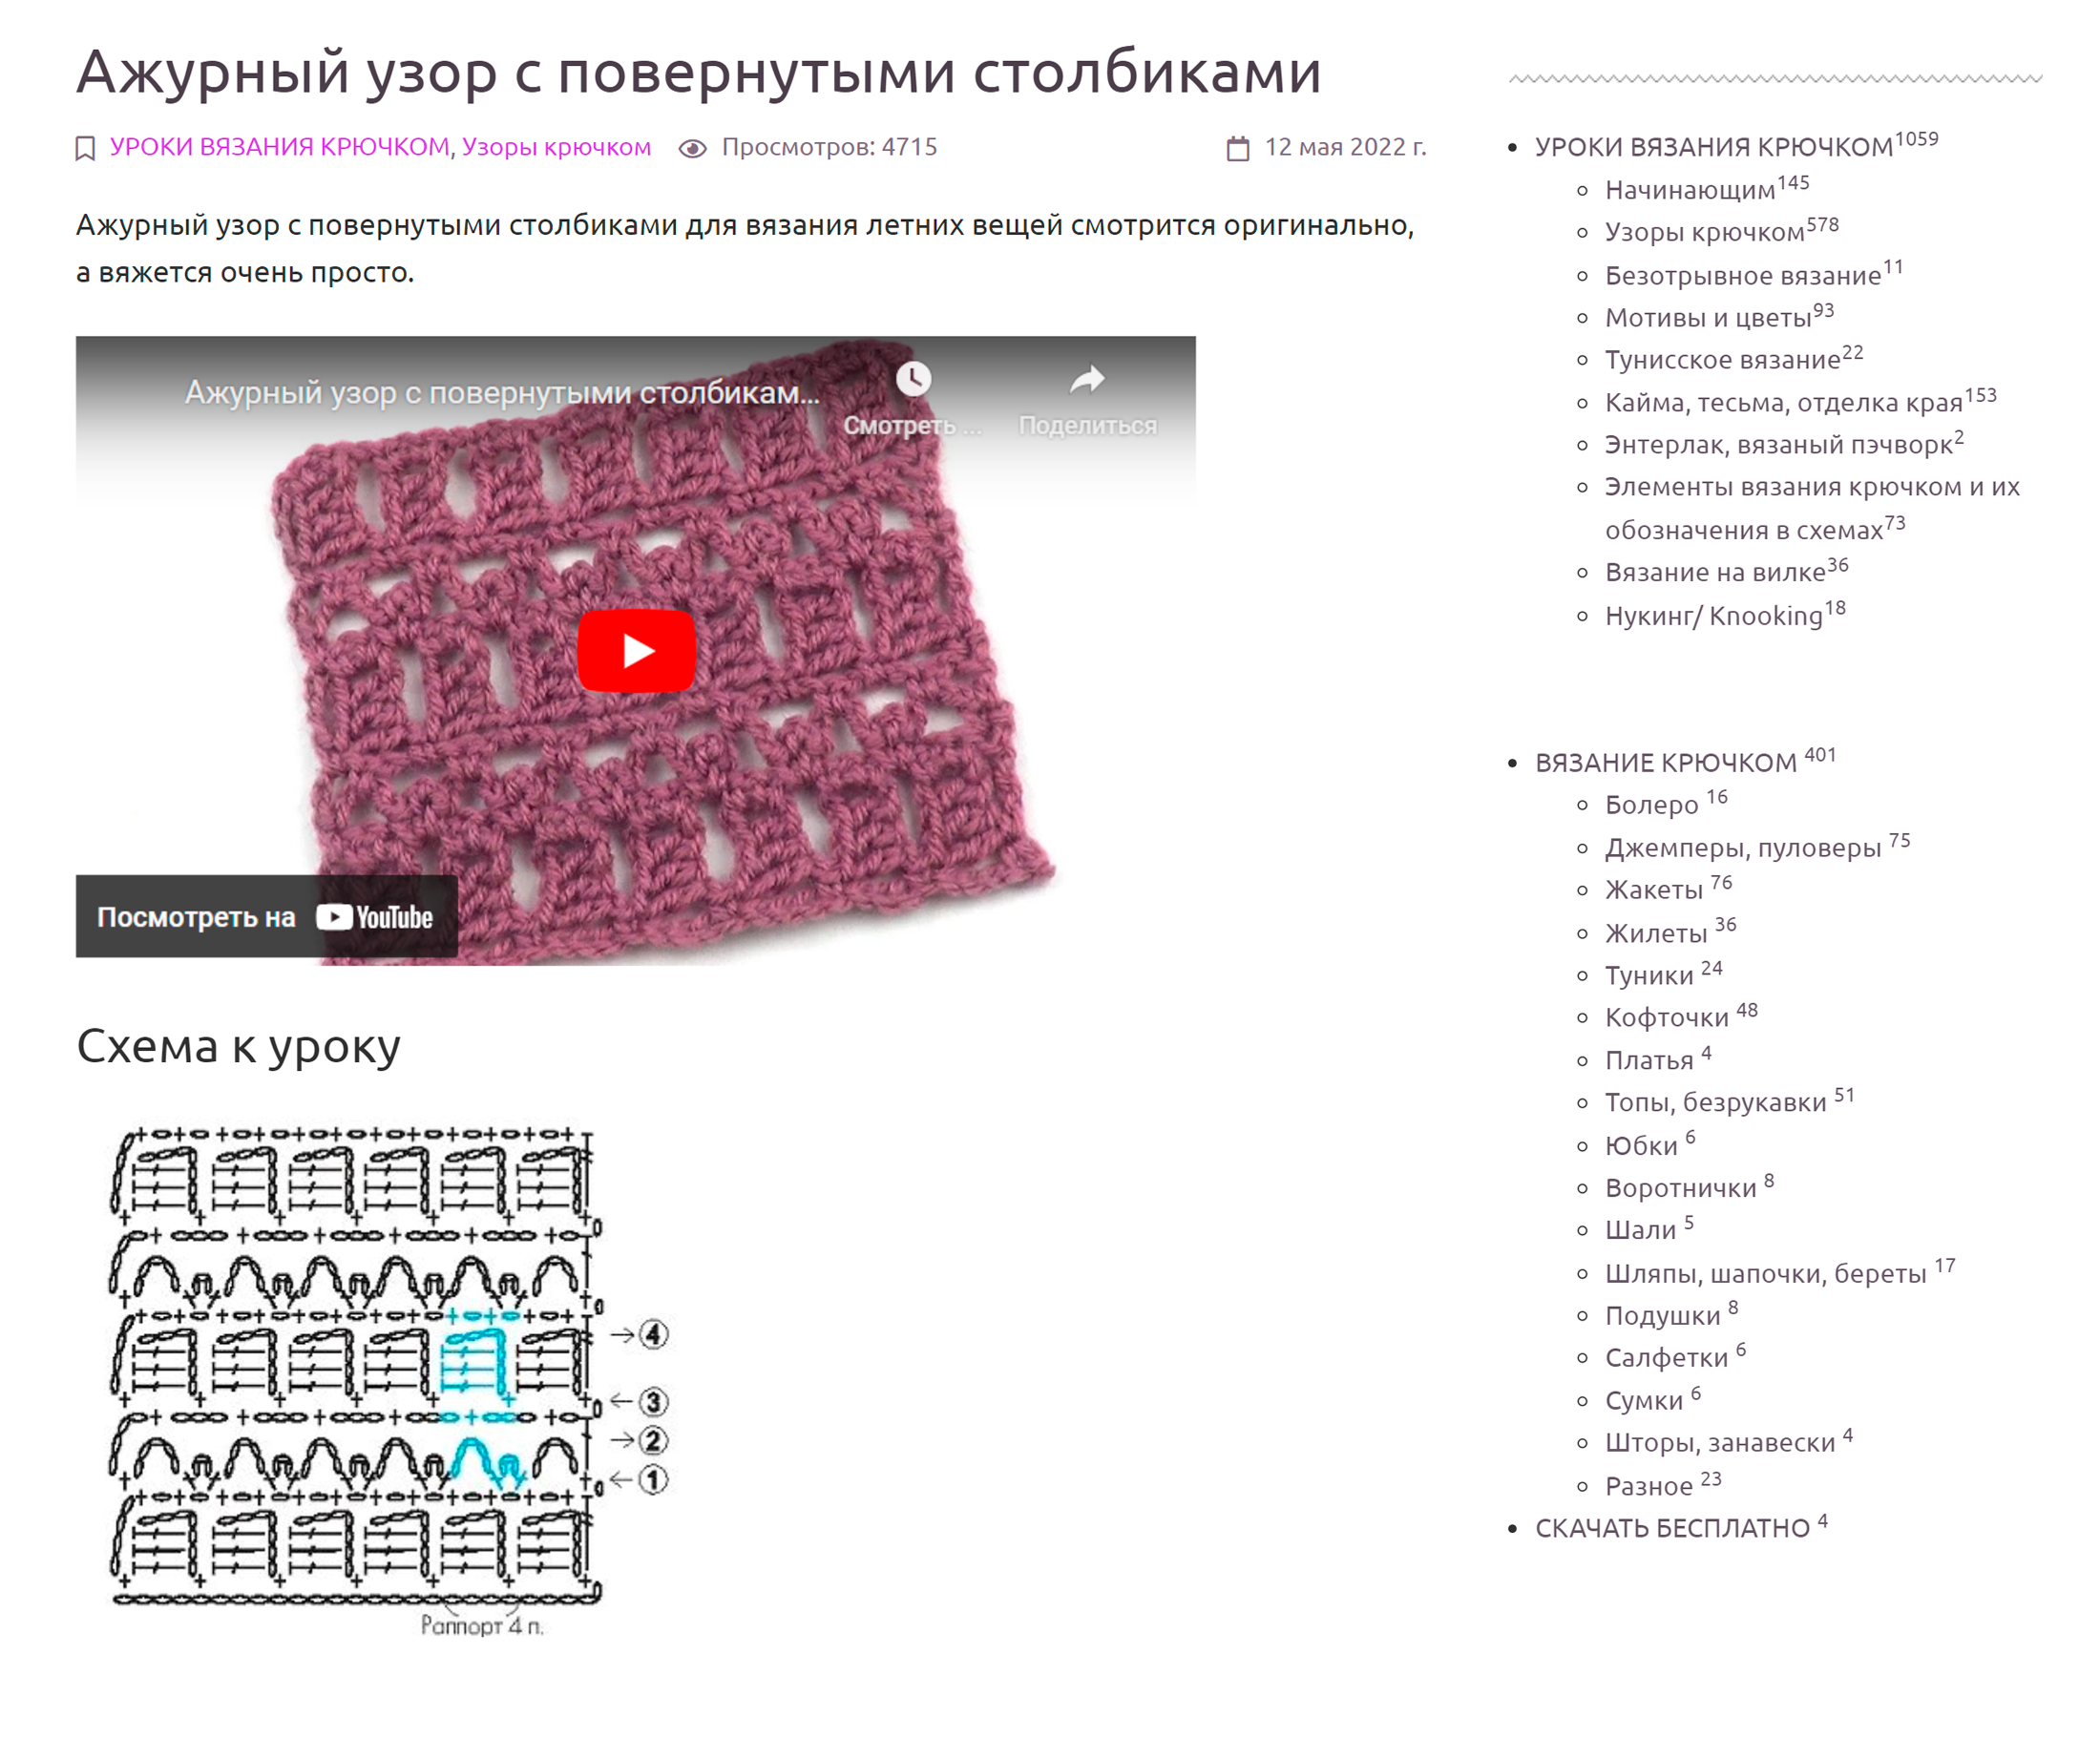 Для каждого узора есть схема и видеоурок с пошаговой инструкцией. Источник: gaanna.ru